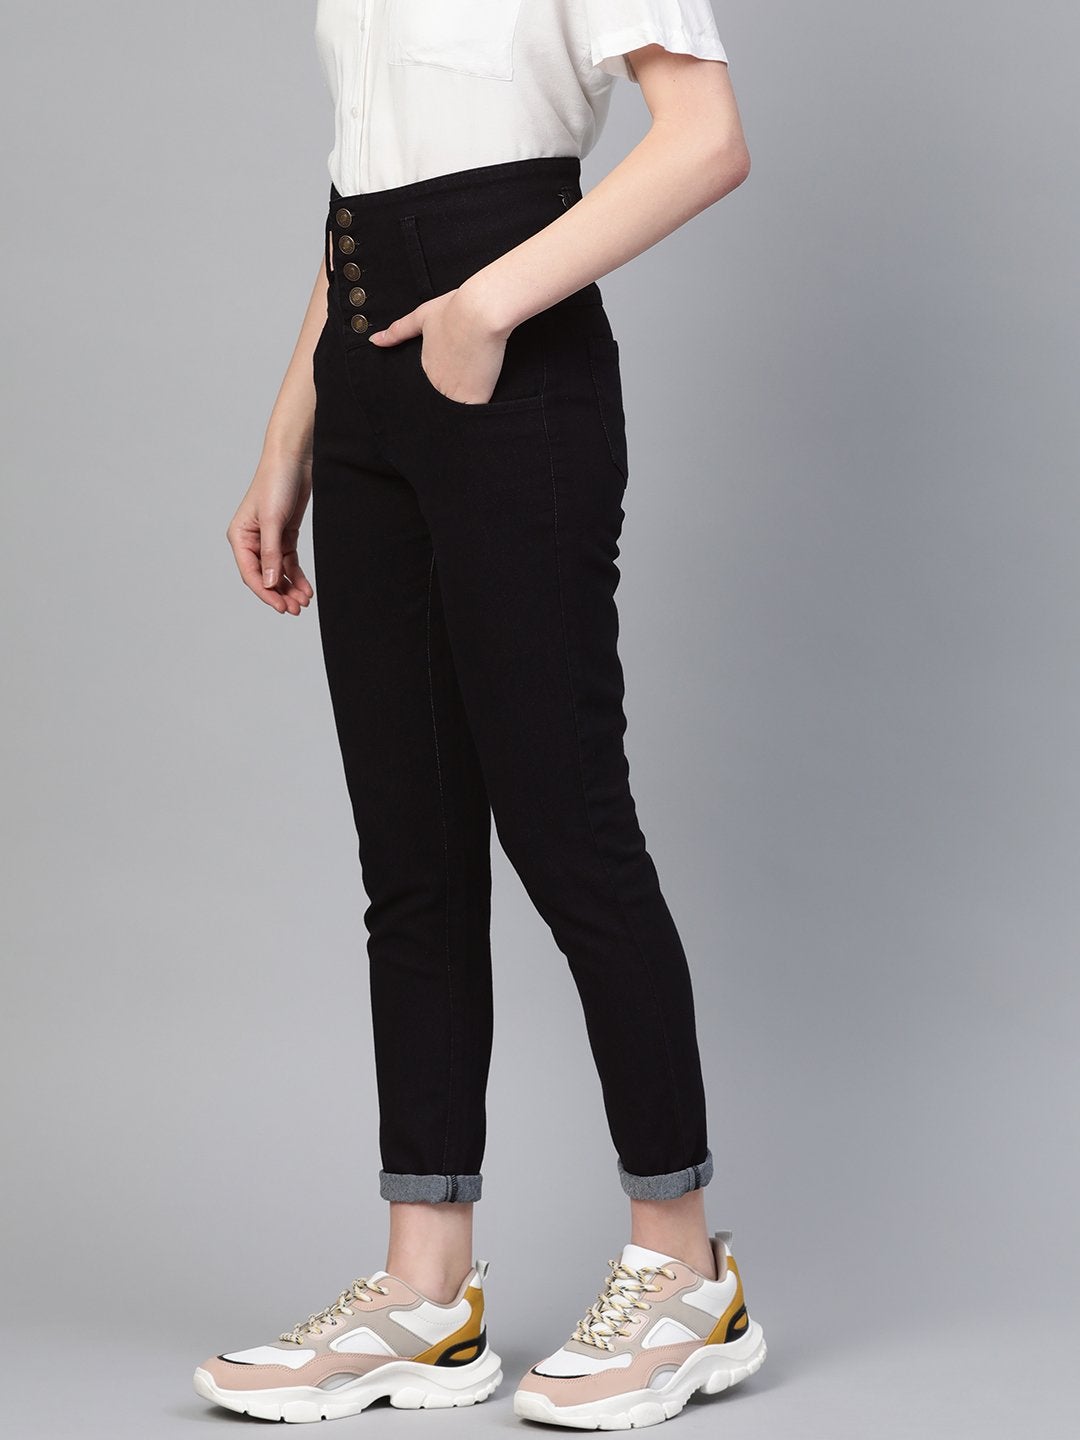 Women's Black Metal Button High Waist Jeans - SASSAFRAS